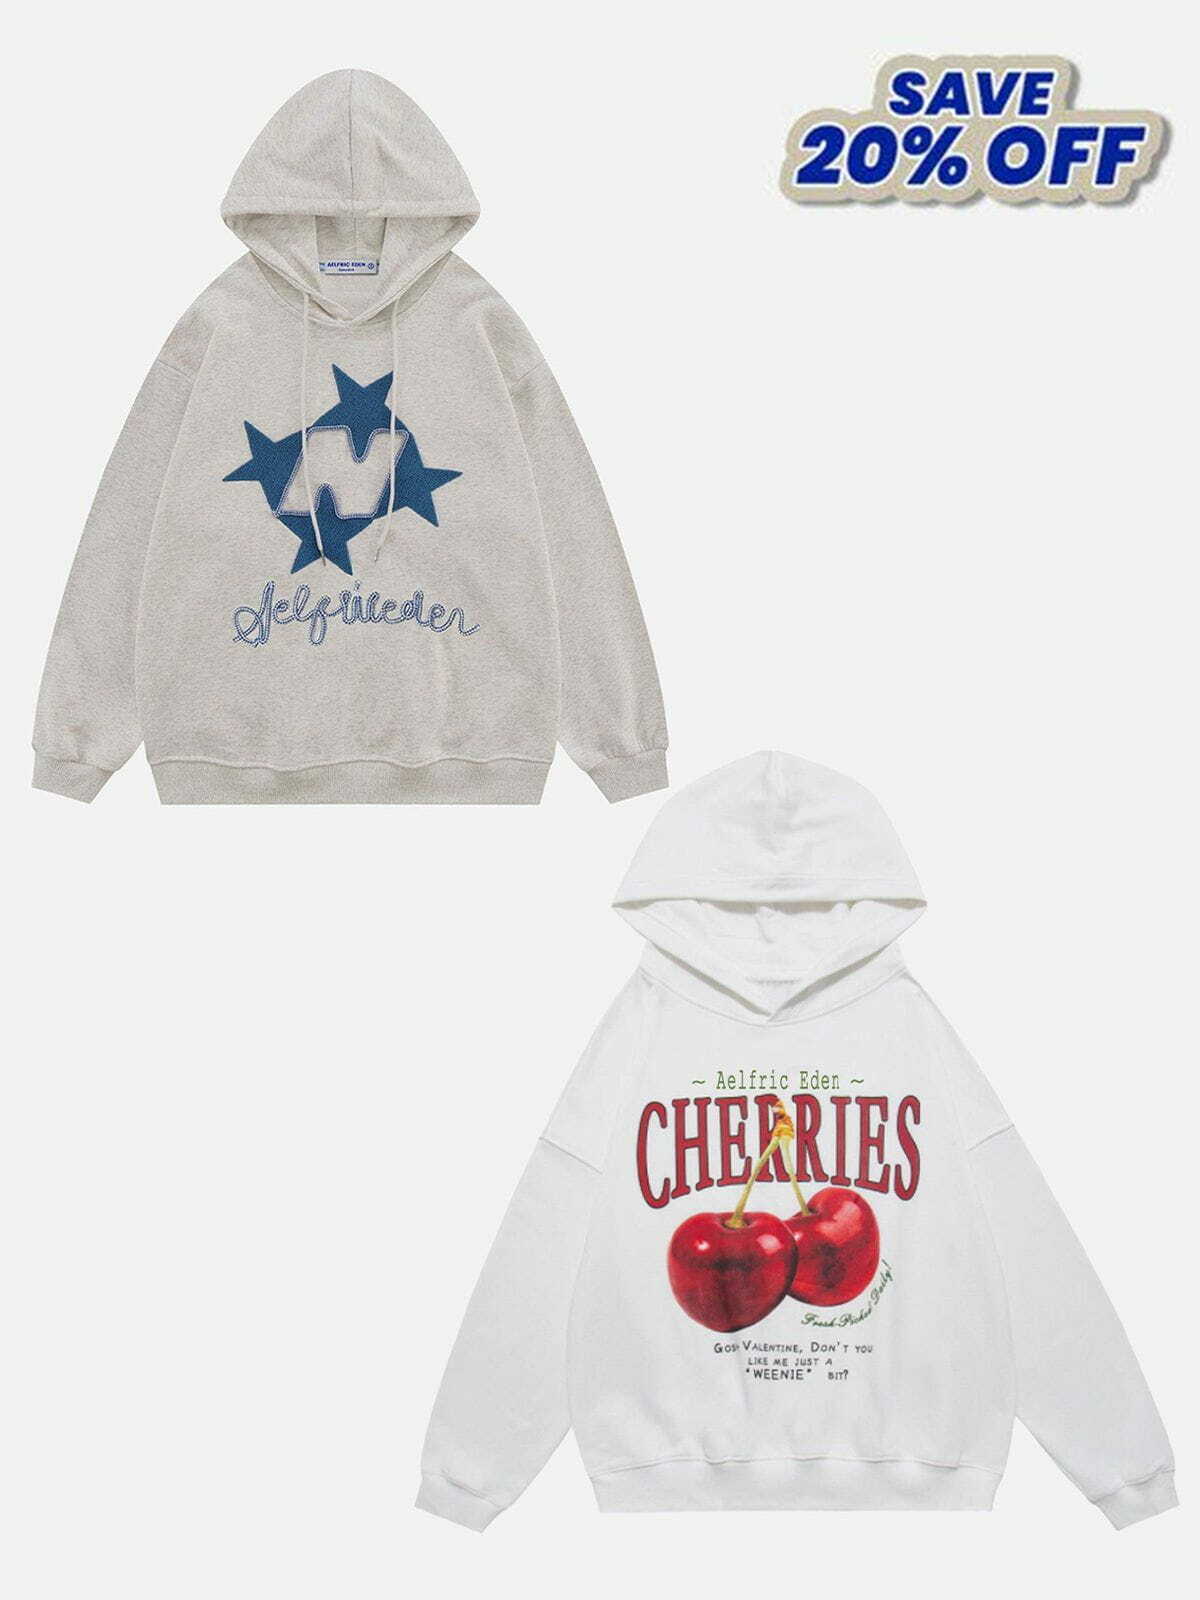 chic cherries hoodie   youthful & trendy streetwear 7056